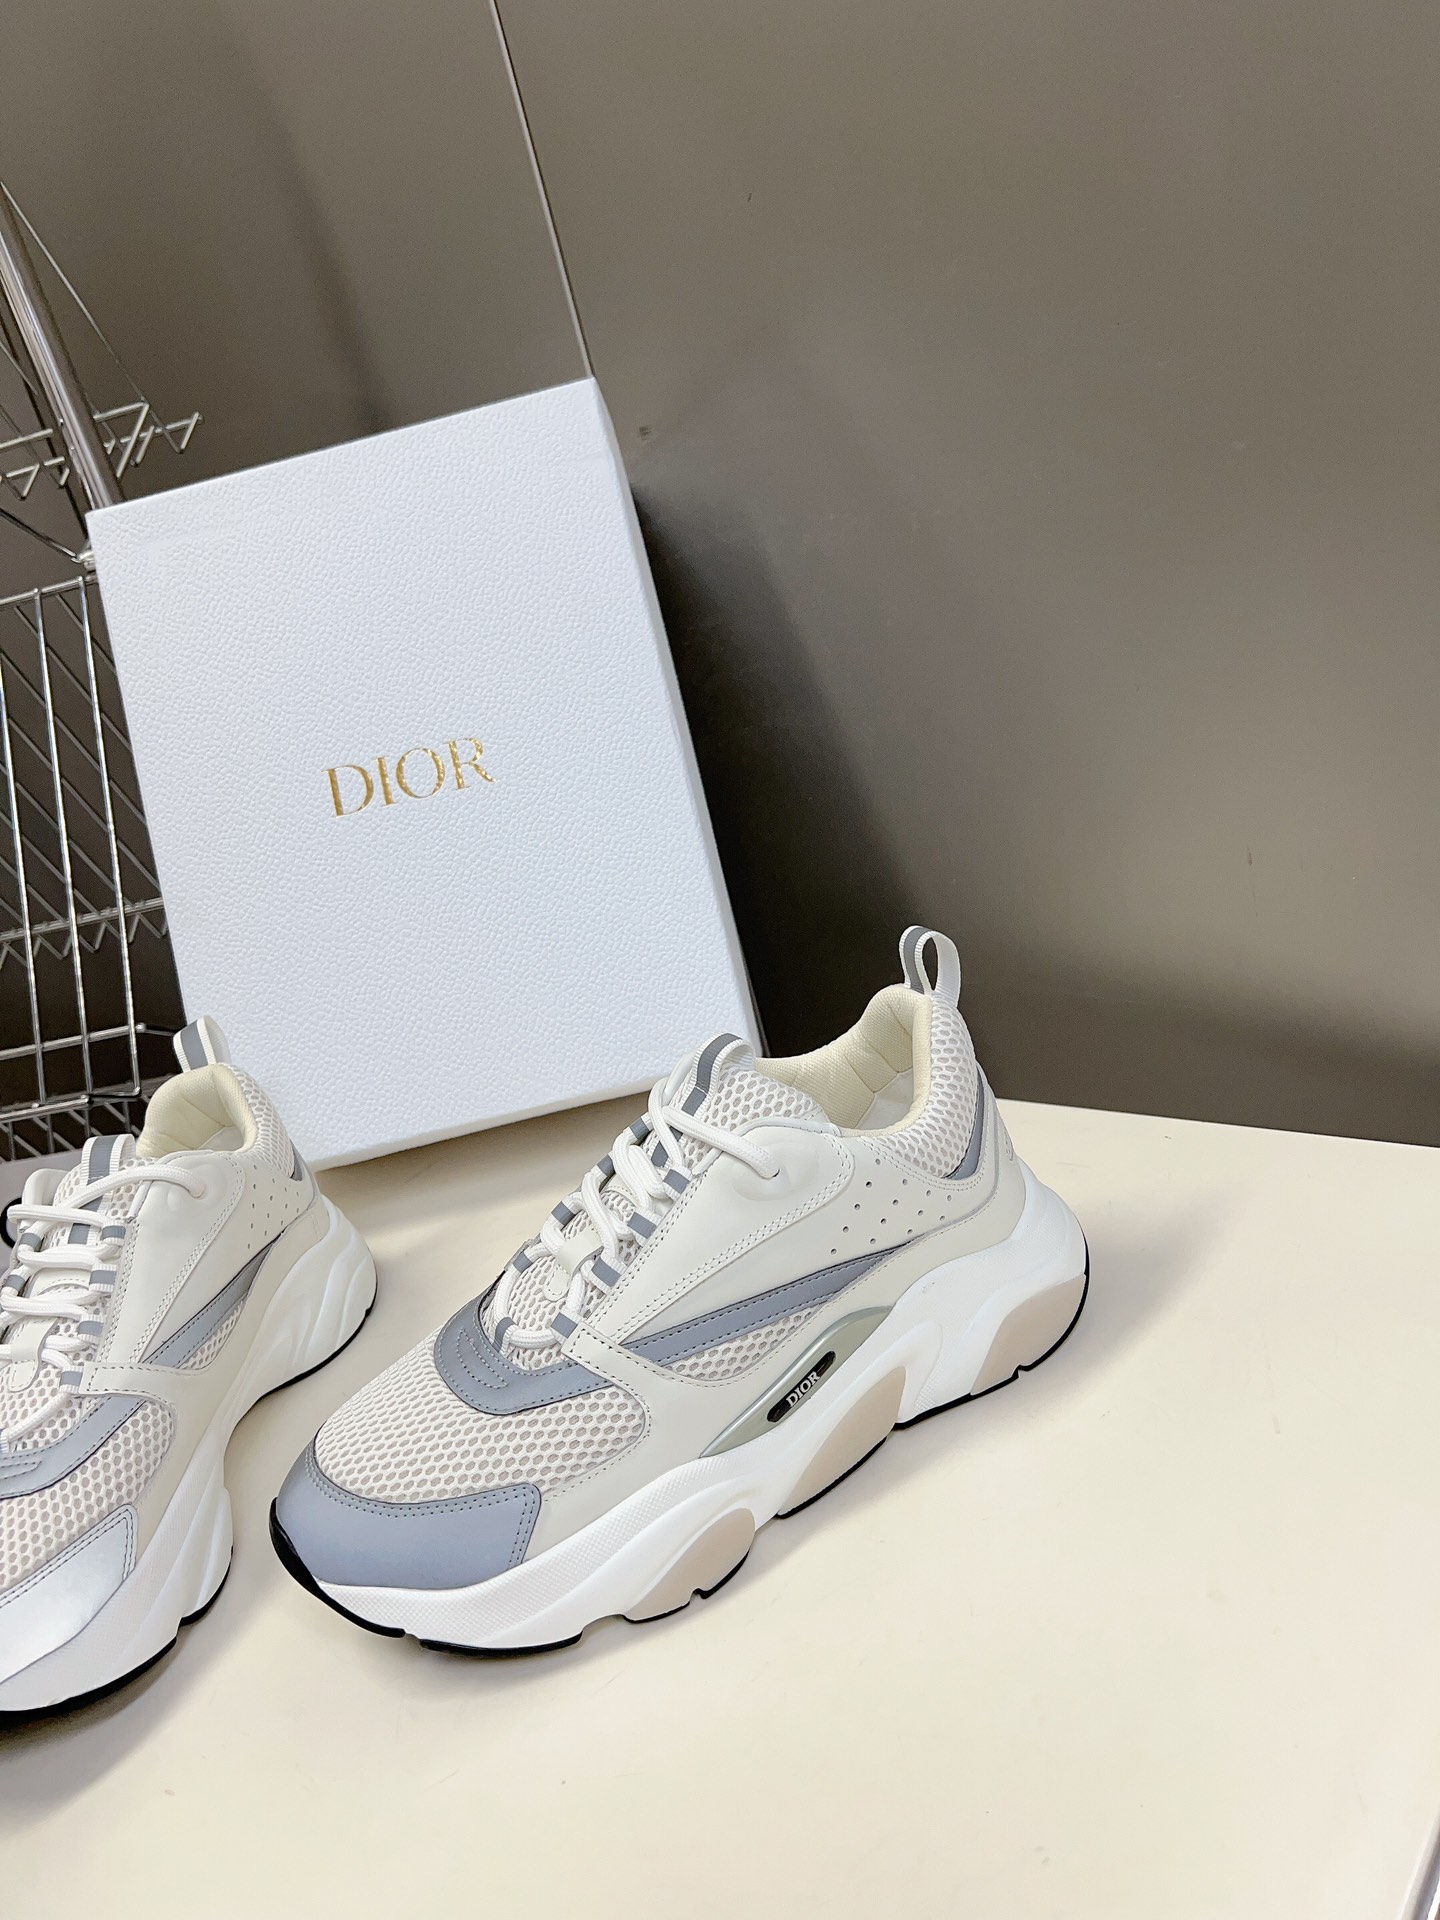 Dior迪奥HommesneakerB22情侣款运动鞋老爹鞋面包鞋️火爆ing的DiorB22系列款采用